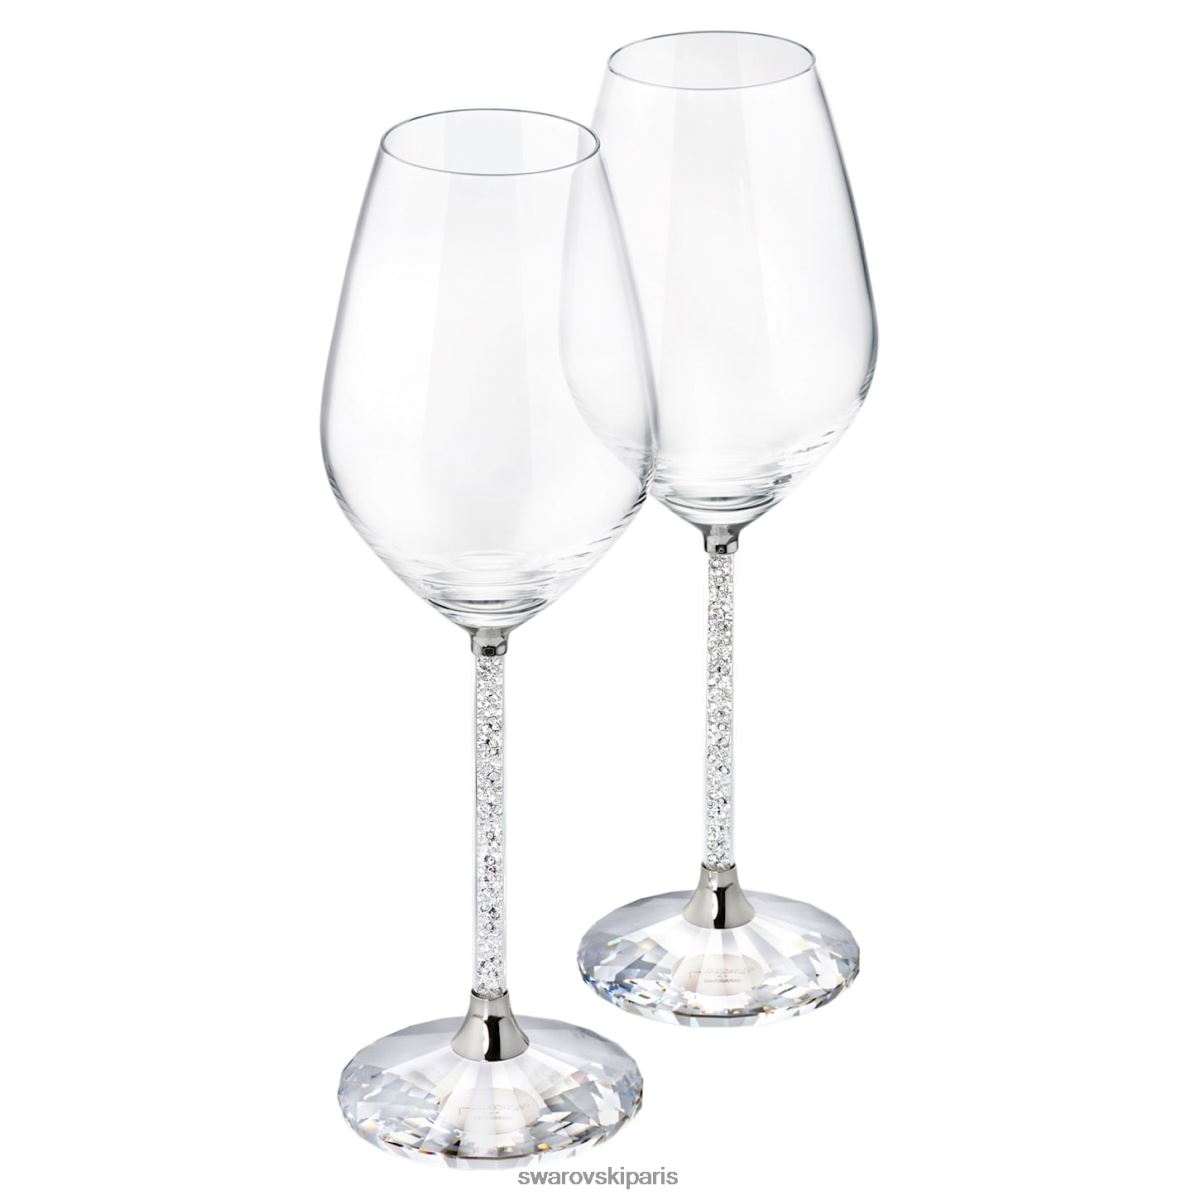 décorations Swarovski verres à vin cristallins (lot de 2) collection RZD0XJ1706